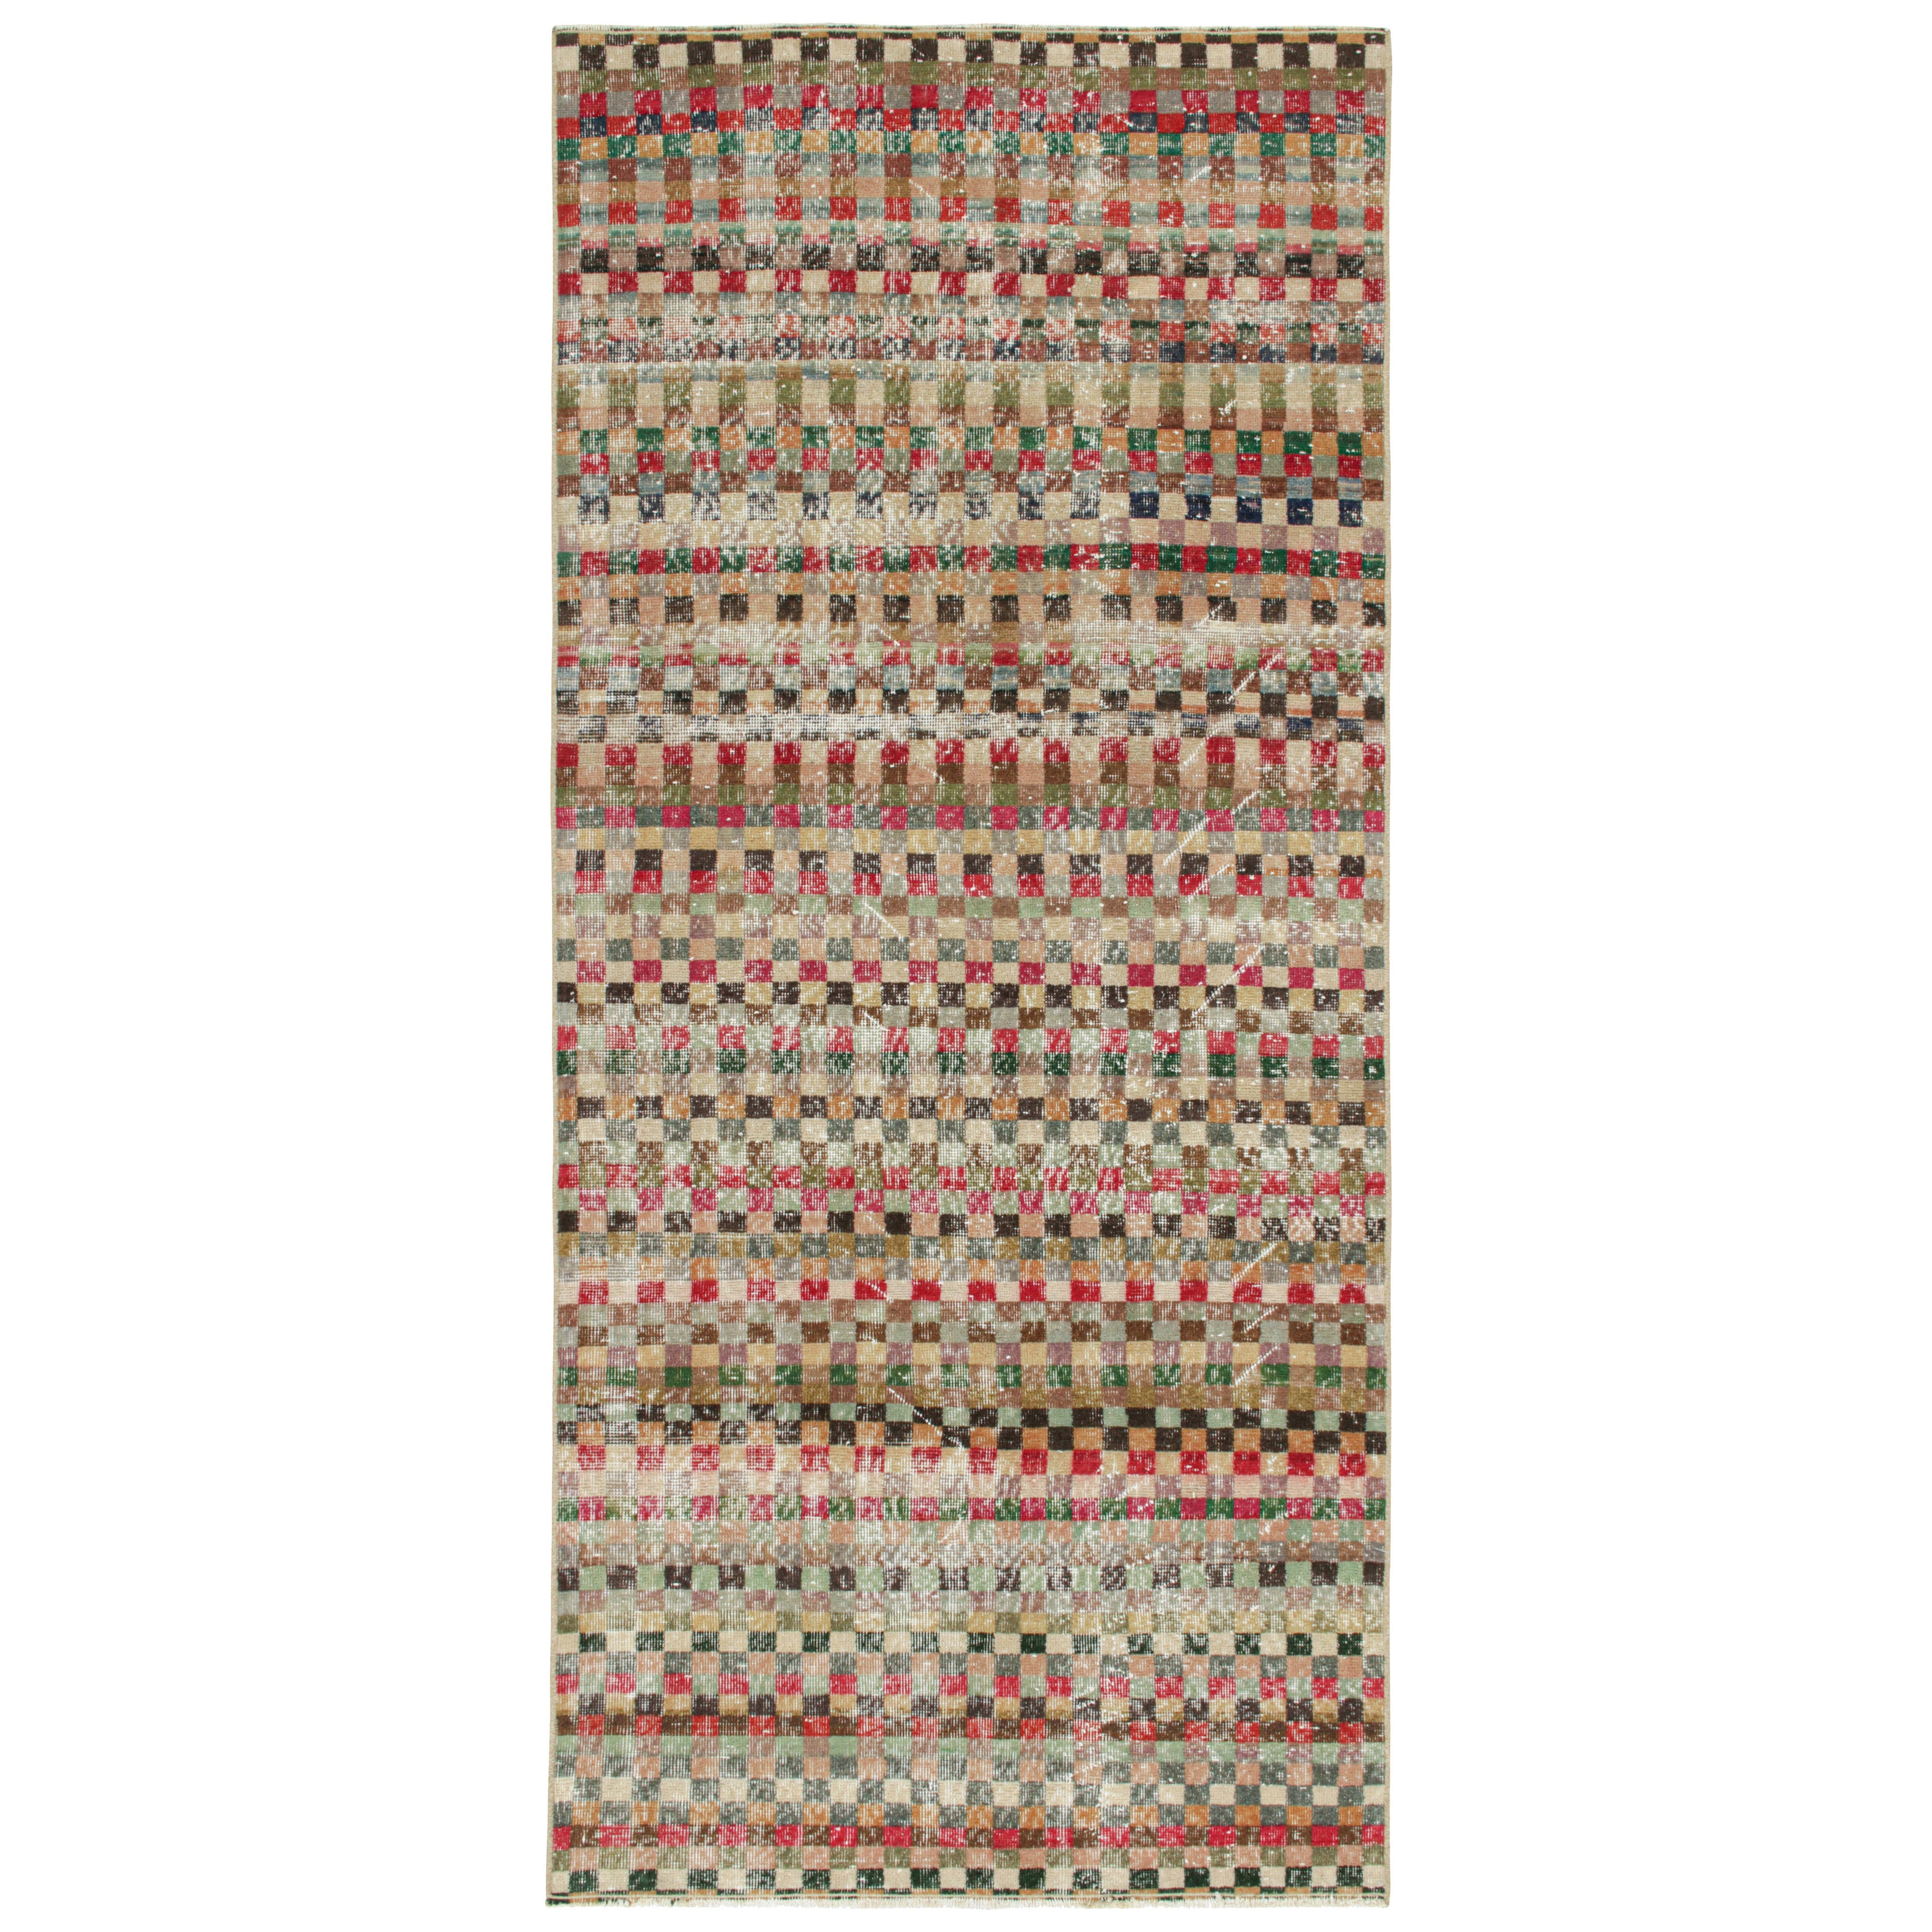 Vintage Zeki Müren Teppich in polychromatischen geometrischen Mustern, von Rug & Kilim